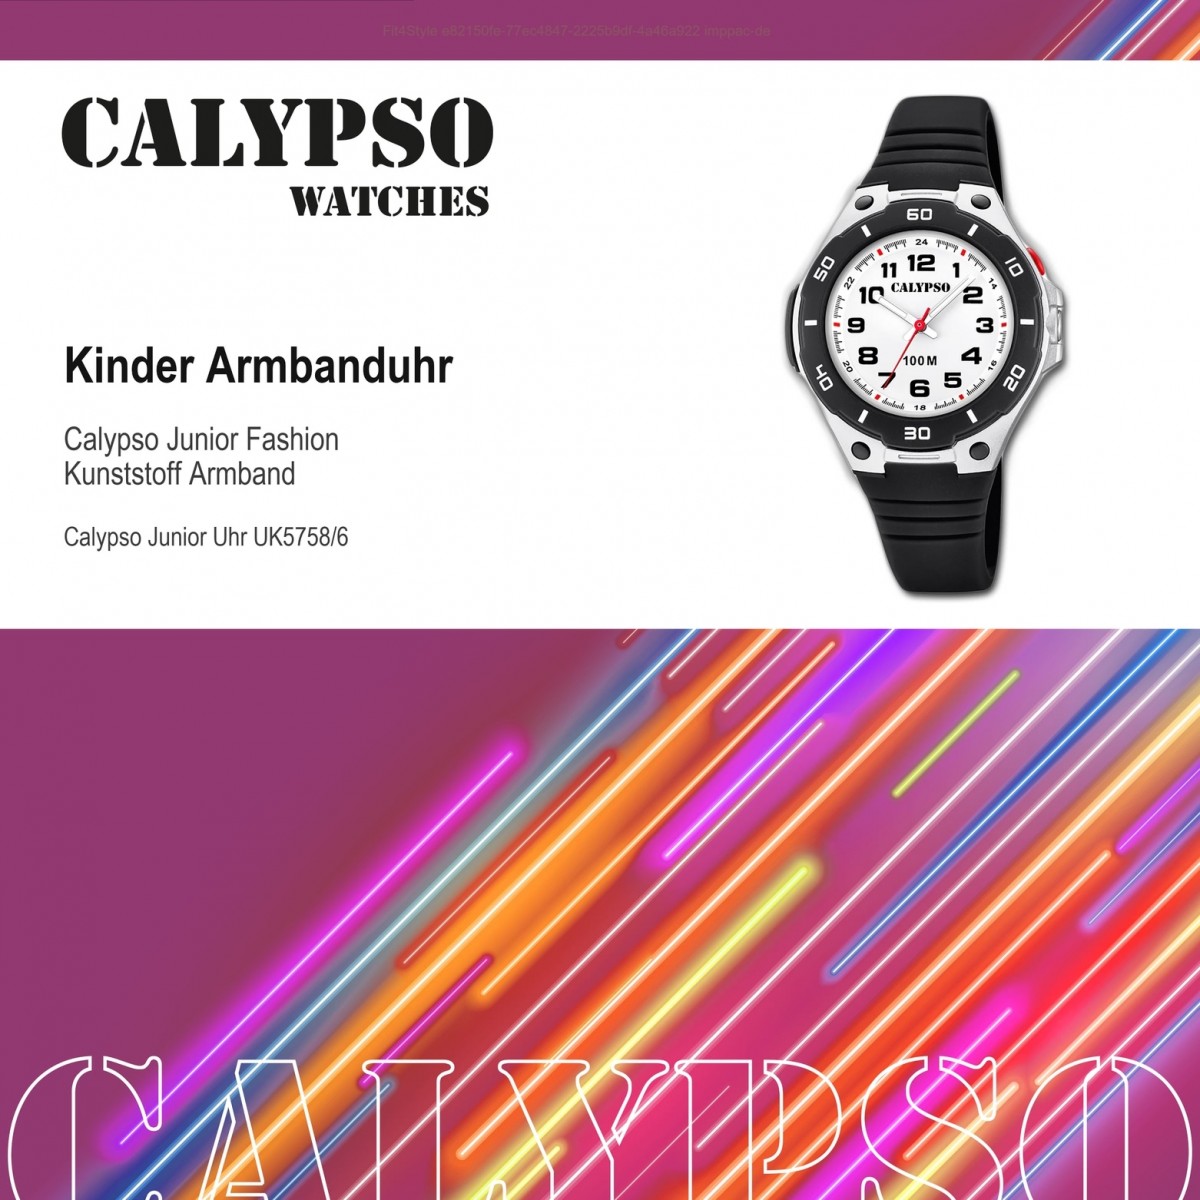 Calypso Kinder Armbanduhr K5758/6 schwarz PU Time Quarz-Uhr UK5758/6 Sweet